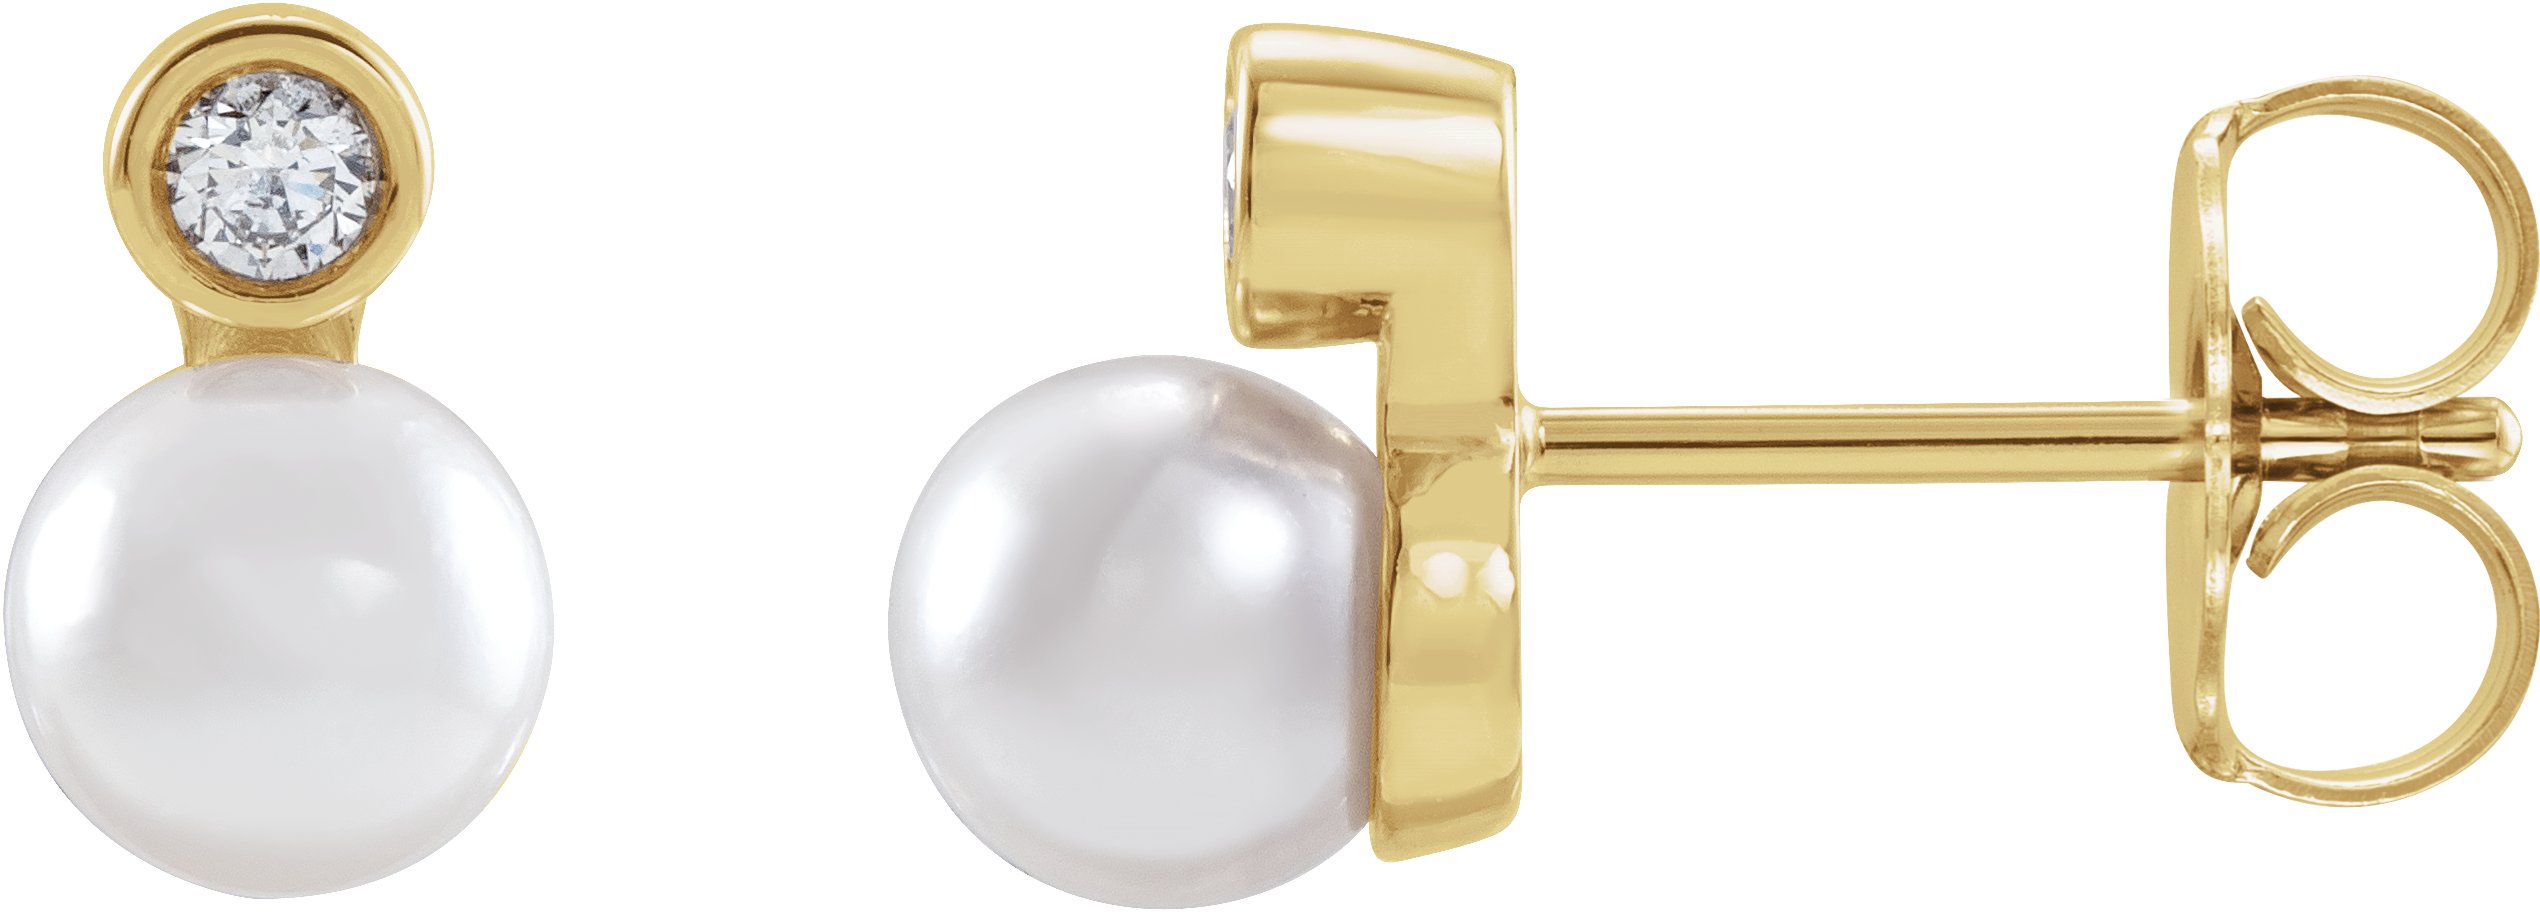 14K White .03 CTW Natural Diamond Semi-Set Earrings for 4-4.5 mm Pearls